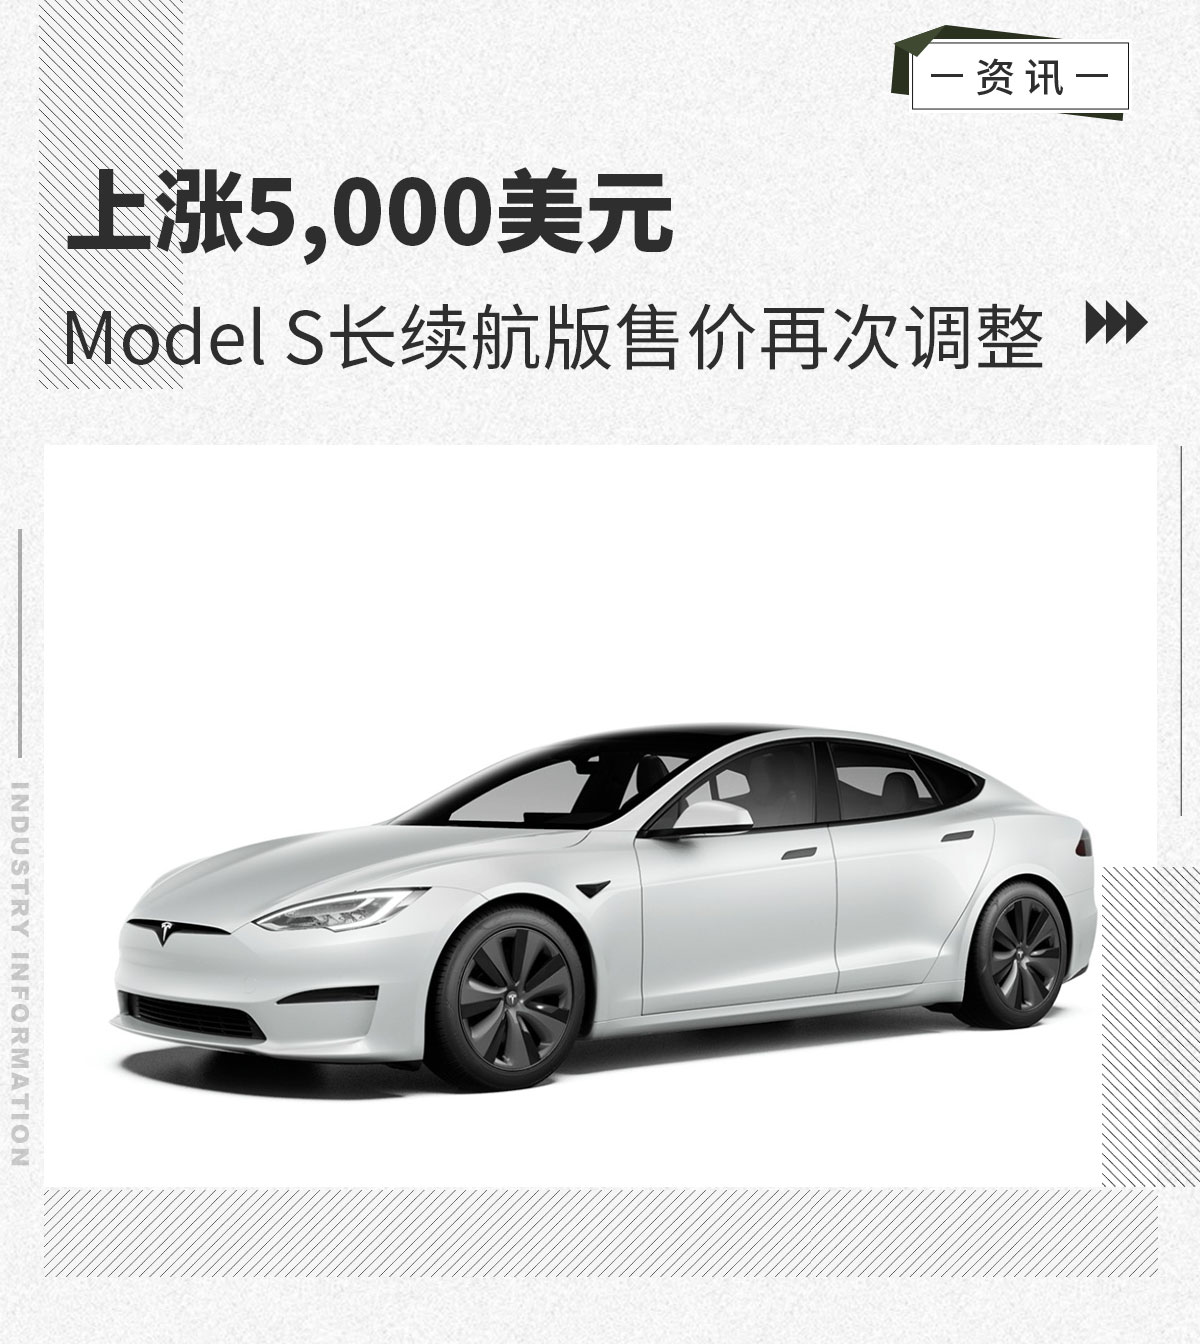 上涨5,000美元 Model S长续航版售价再次调整